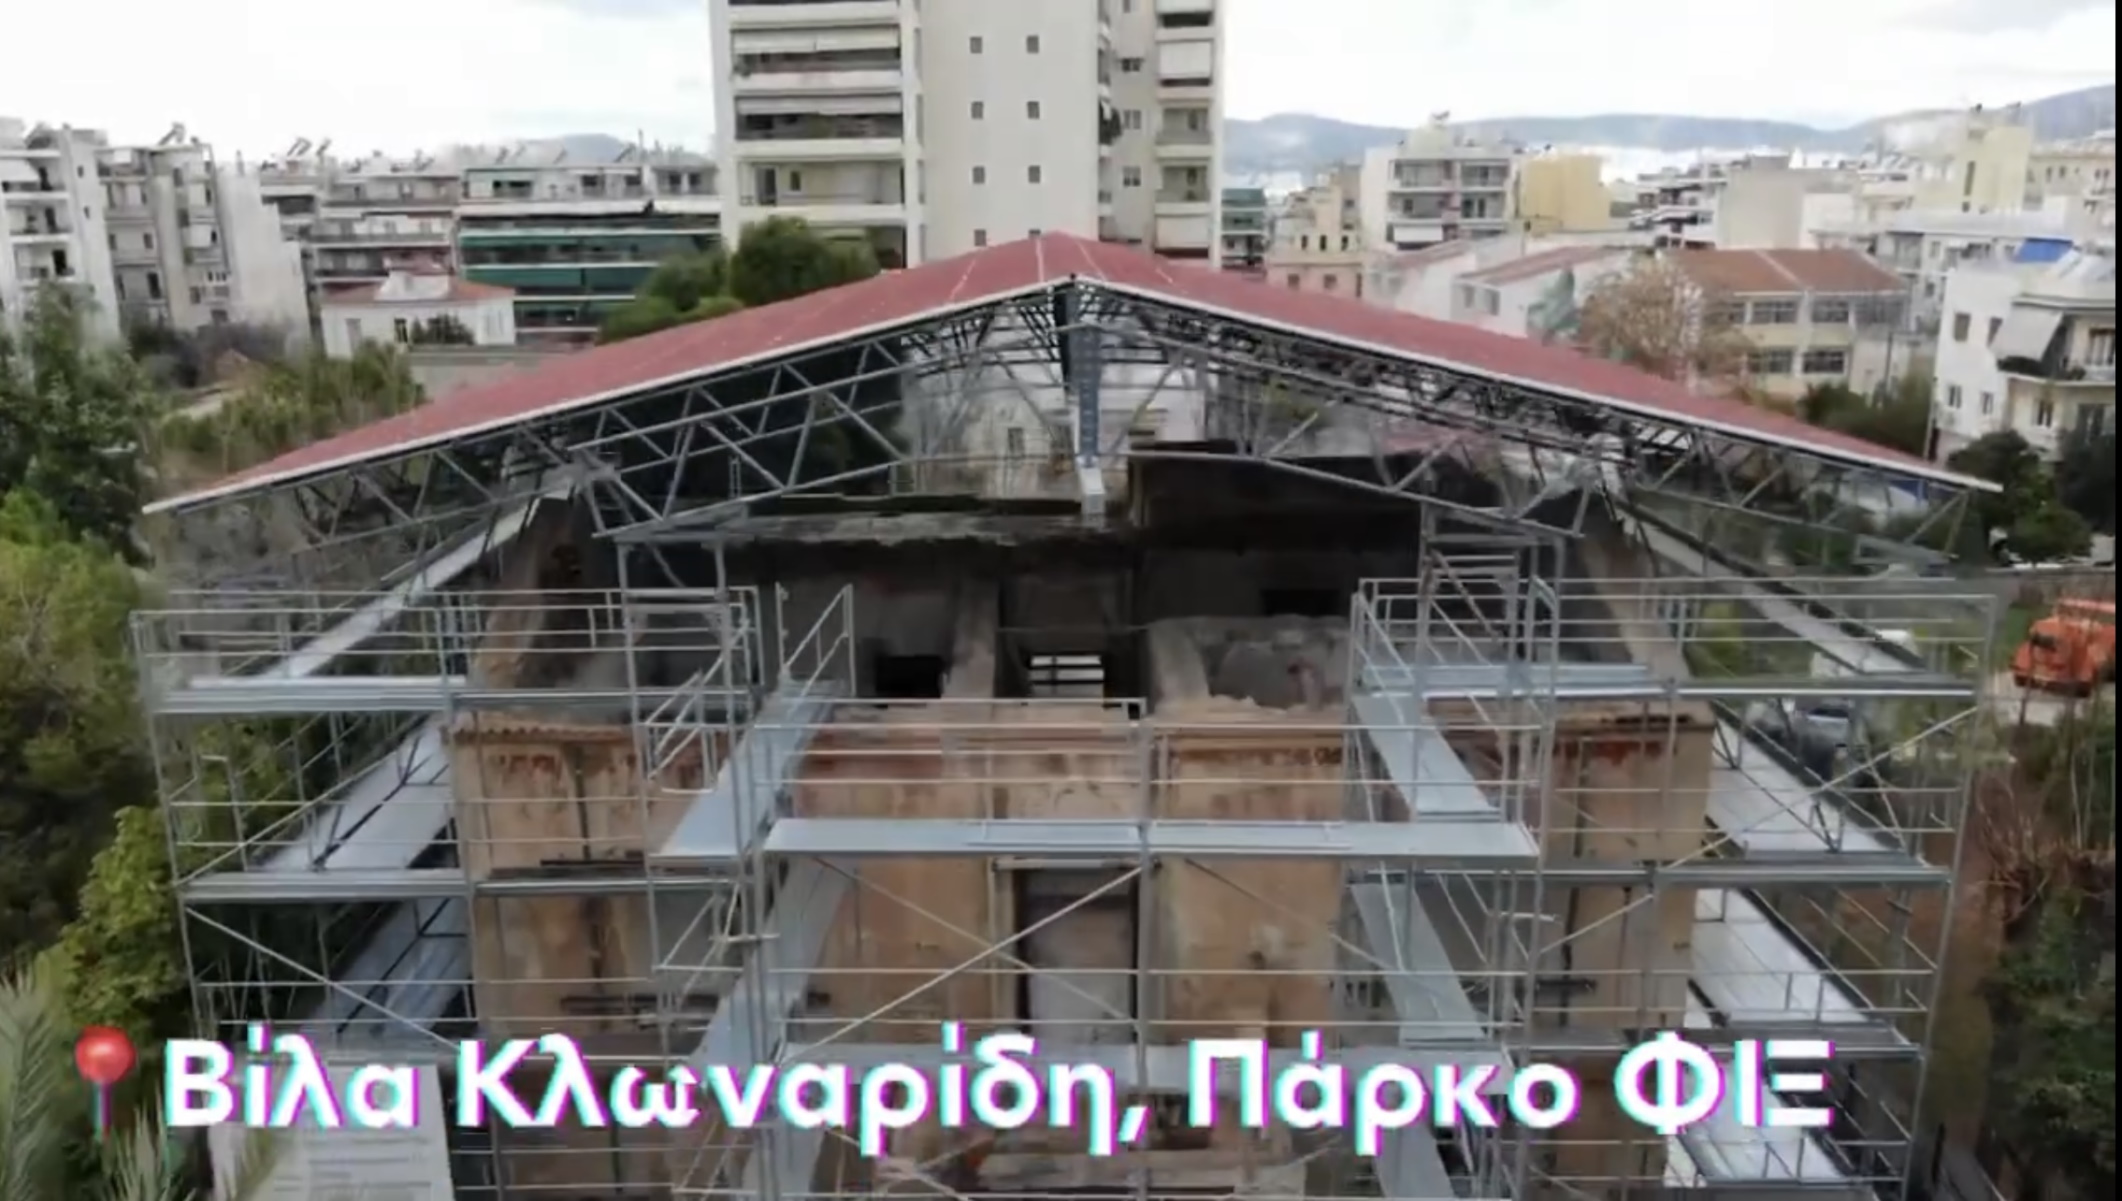 Μπακογιάννης για βίλα Κλωναρίδη στο πάρκο Φιξ: Διασώζουμε το ιστορικό κτίριο της Πατησίων